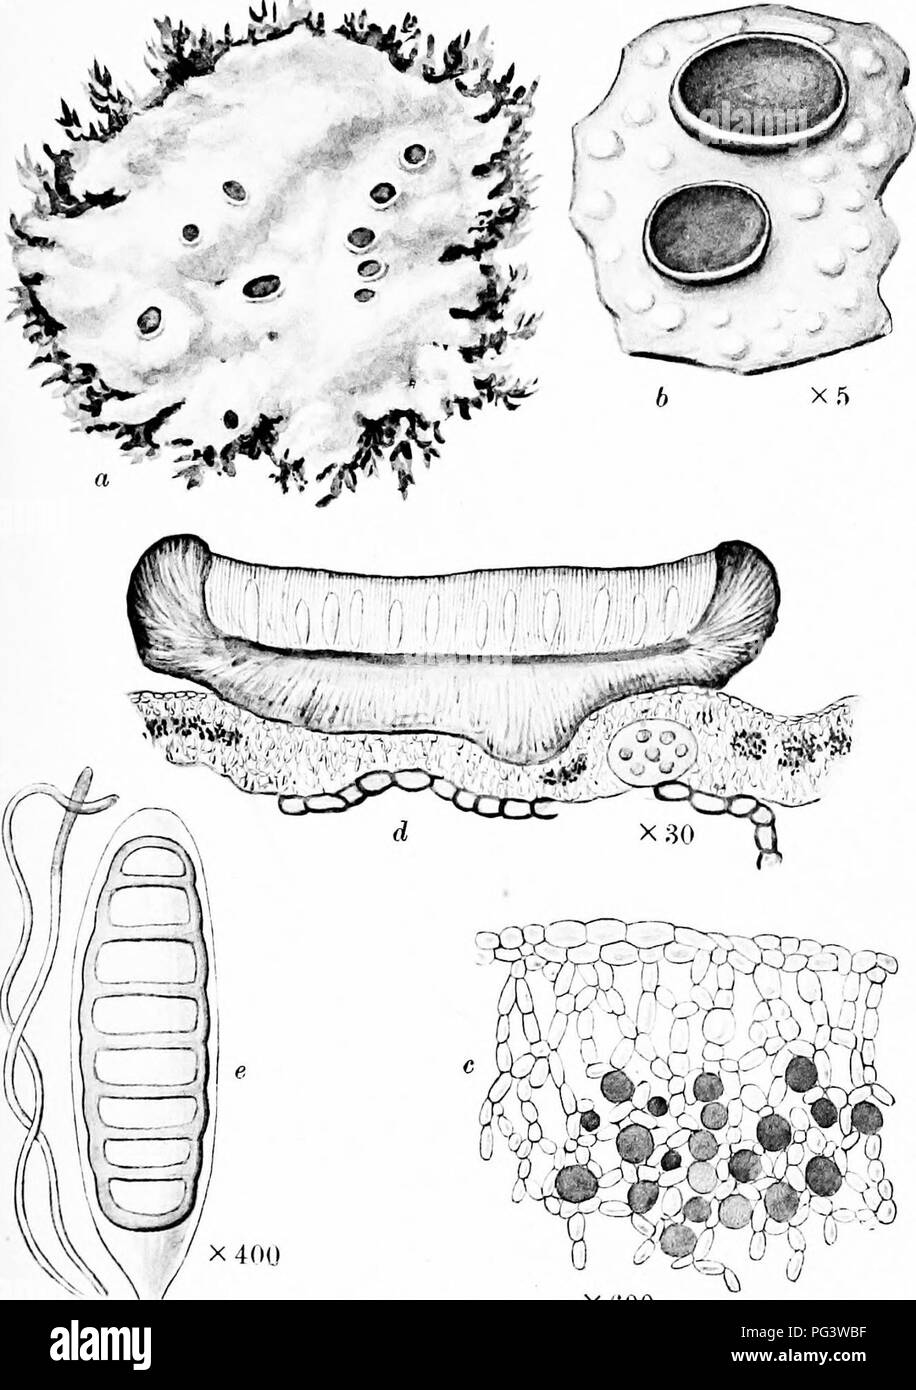 . Una monografia di licheni trovato in Gran Bretagna; essendo un catalogo descrittivo della specie nell'erbario del British Museum. I licheni. La piastra 16. XfiOO BOMBYLIOSPORA PACHYCARPA Massal. un (&GT; a. Impianto su MOSS. b. Porzione di tallo e apothecia. c. Sezione verticale 0 0 0 di tallo. d. Sezione verticale di apothecium. c, Arcus con spore e paraphyses.. Si prega di notare che queste immagini vengono estratte dalla pagina sottoposta a scansione di immagini che possono essere state migliorate digitalmente per la leggibilità - Colorazione e aspetto di queste illustrazioni potrebbero non perfettamente assomigliano al lavoro originale. British Museum (Na Foto Stock